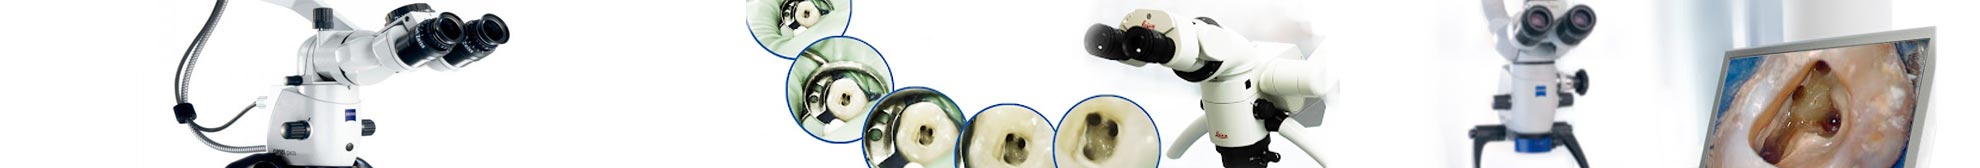 Микроскопная стоматология - Клиника эстетической стоматологии 